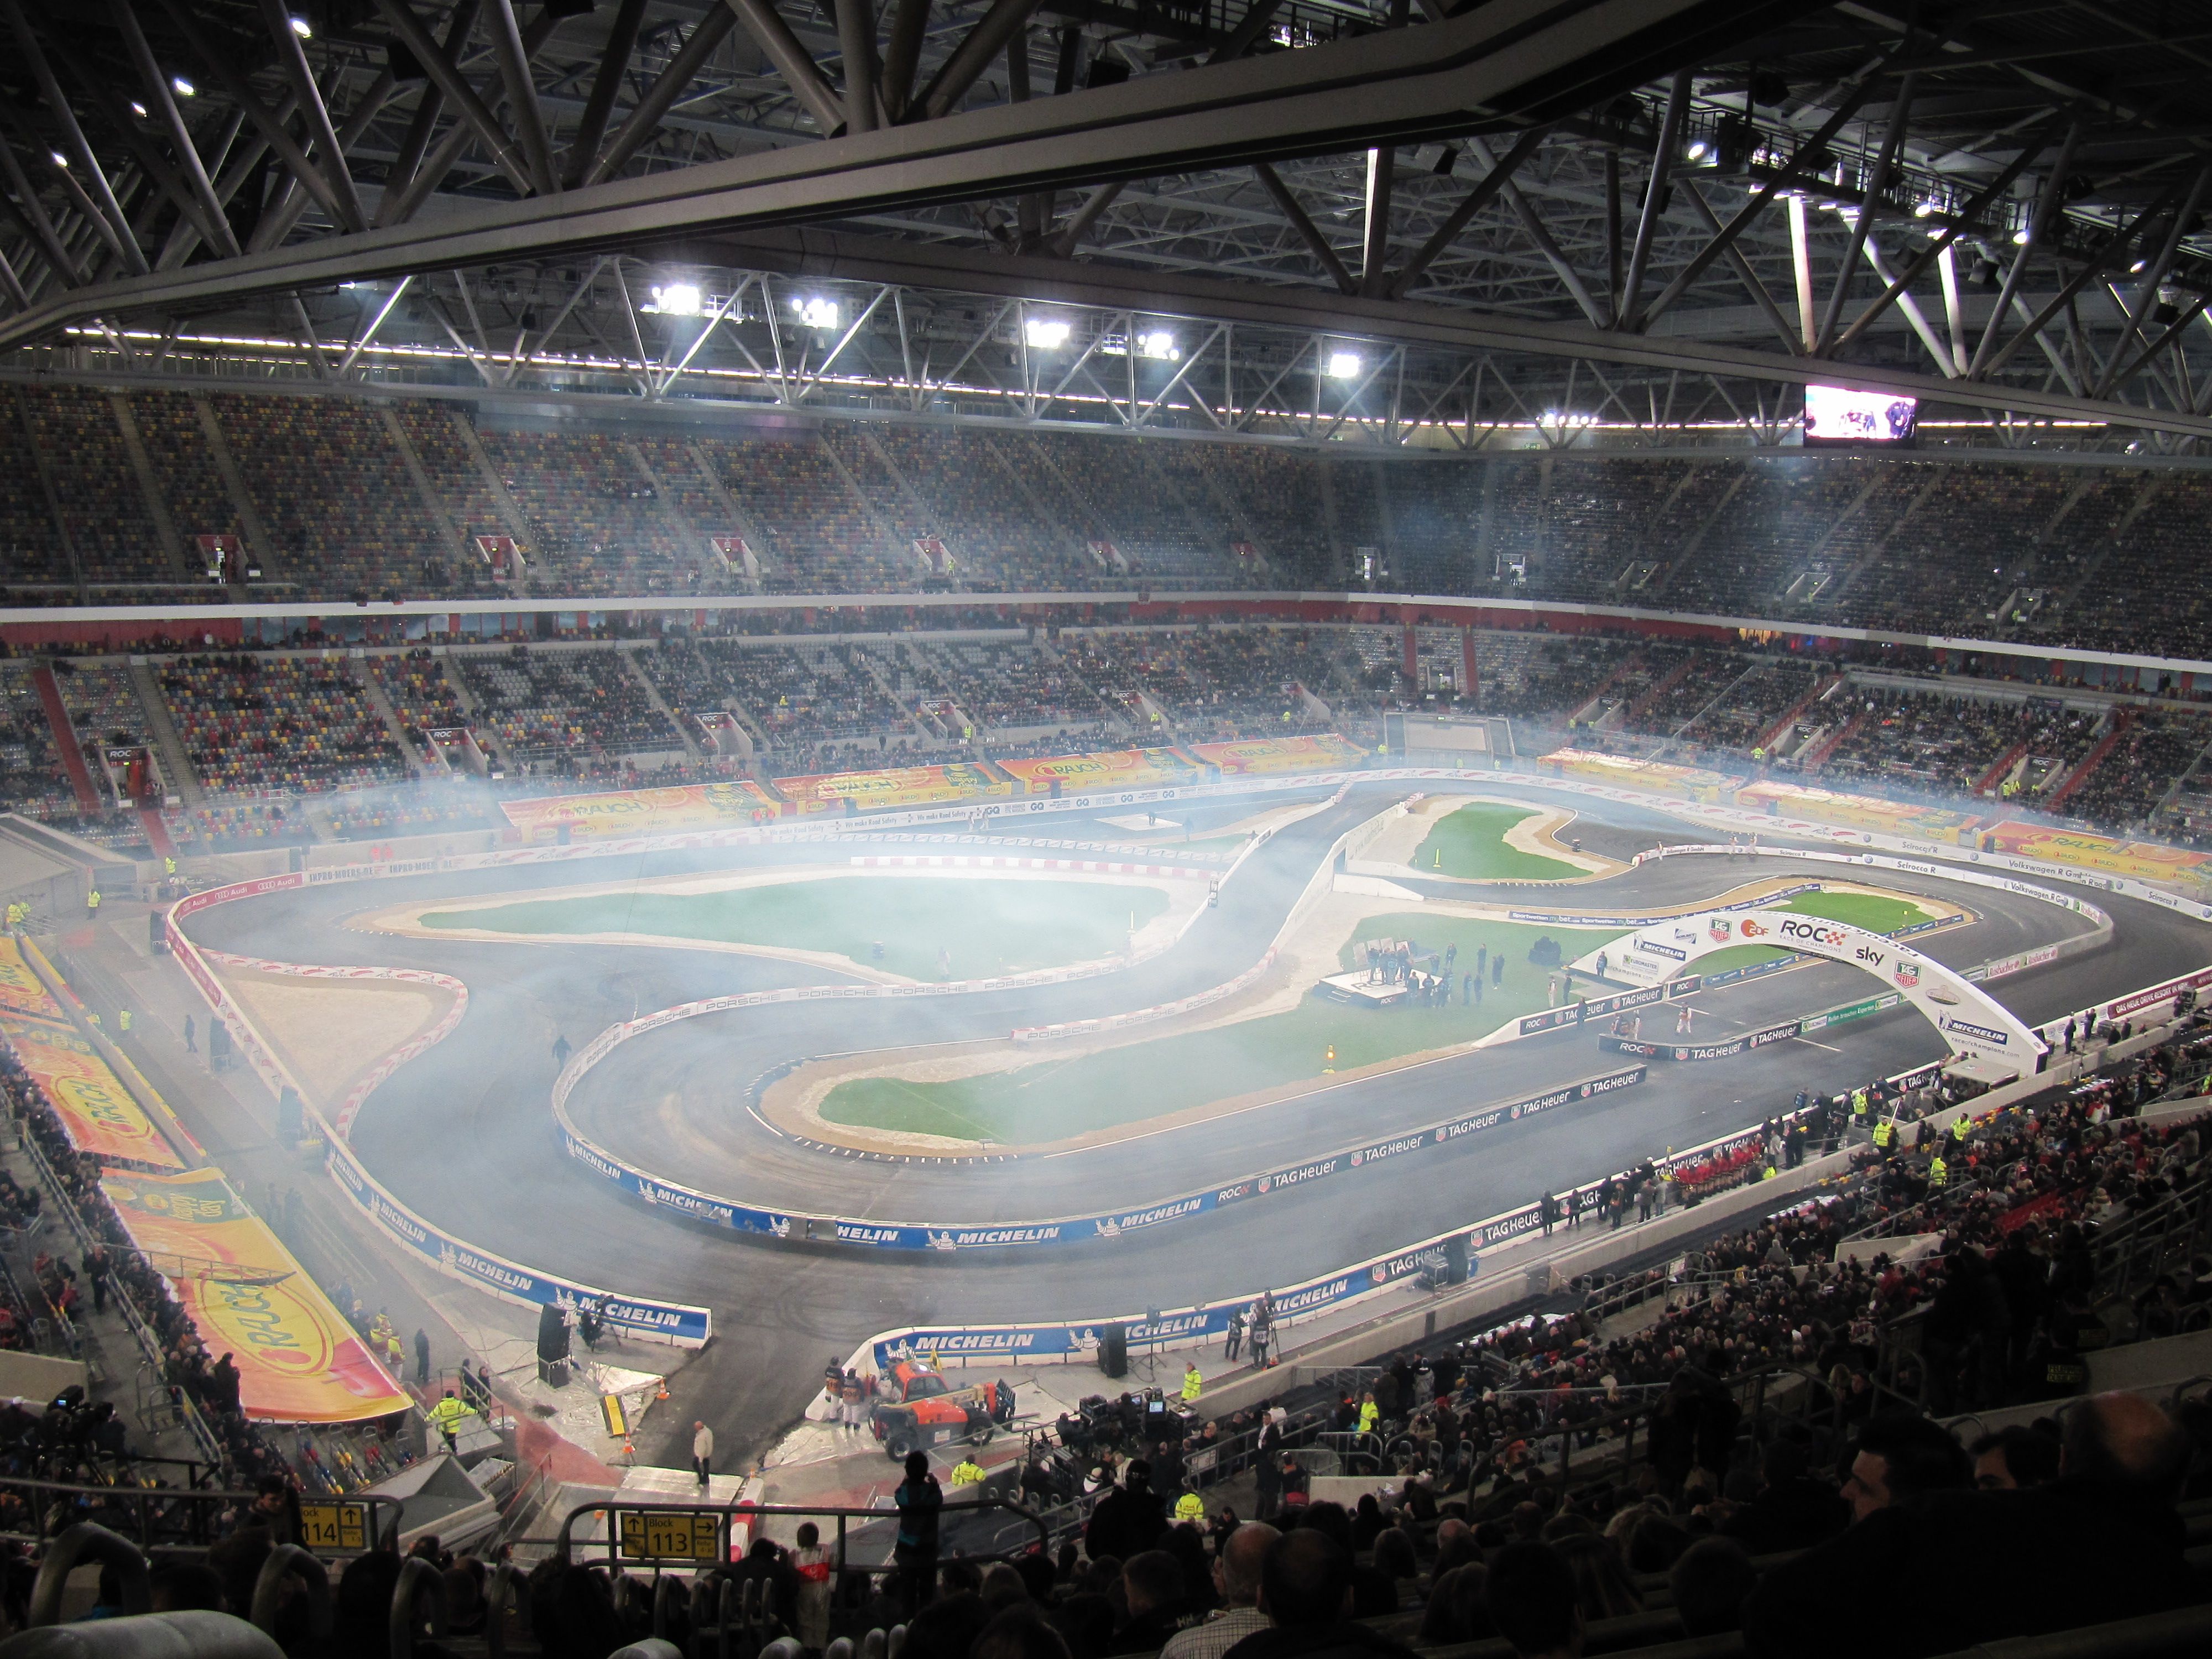 Neben Fußball von Fortuna Düsseldorf wurden in der ESPRIT arena auch andere Events abgehalten. Im Bereich Motorsport gab es zum Beispiel das Race of Champions 2010.